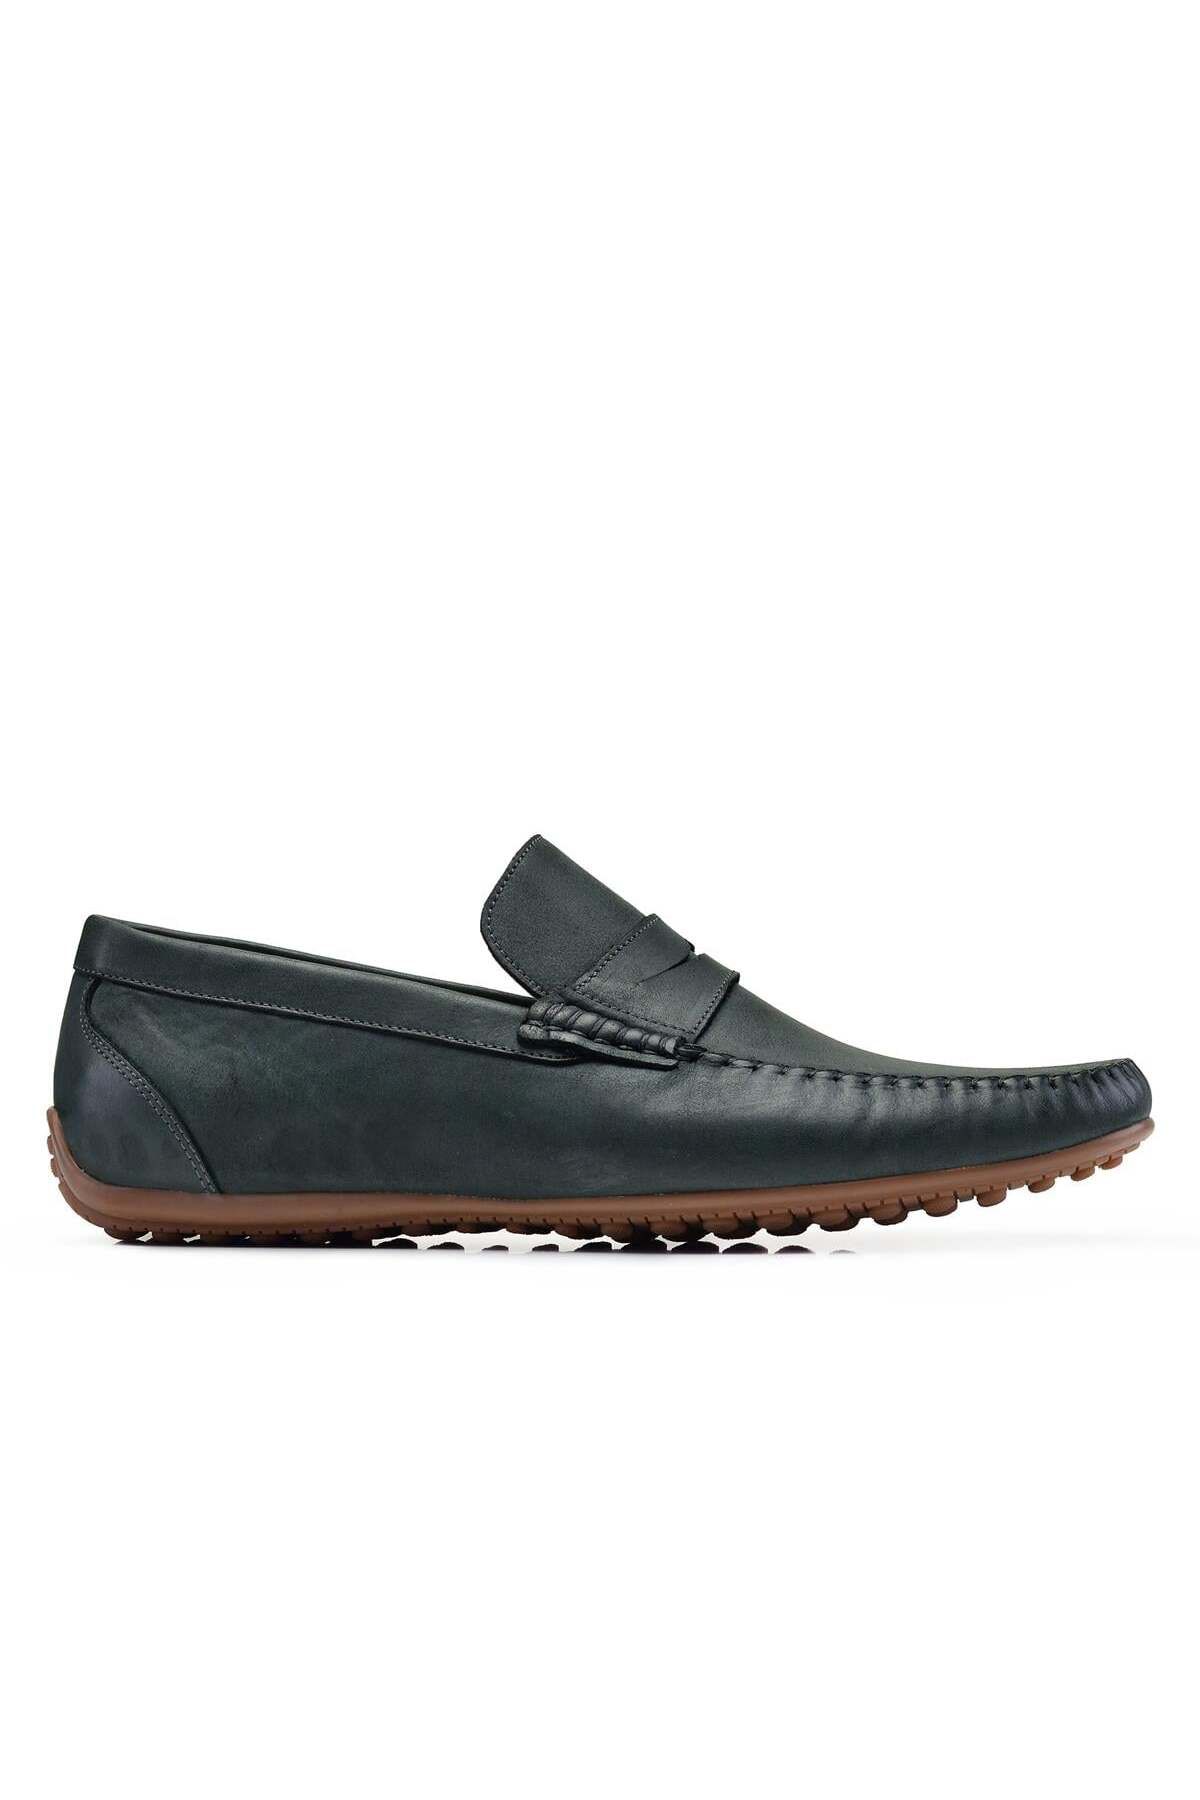 Nevzat Onay Nubuk Koyu Yeşil Yazlık Loafer Erkek Ayakkabı -22927-